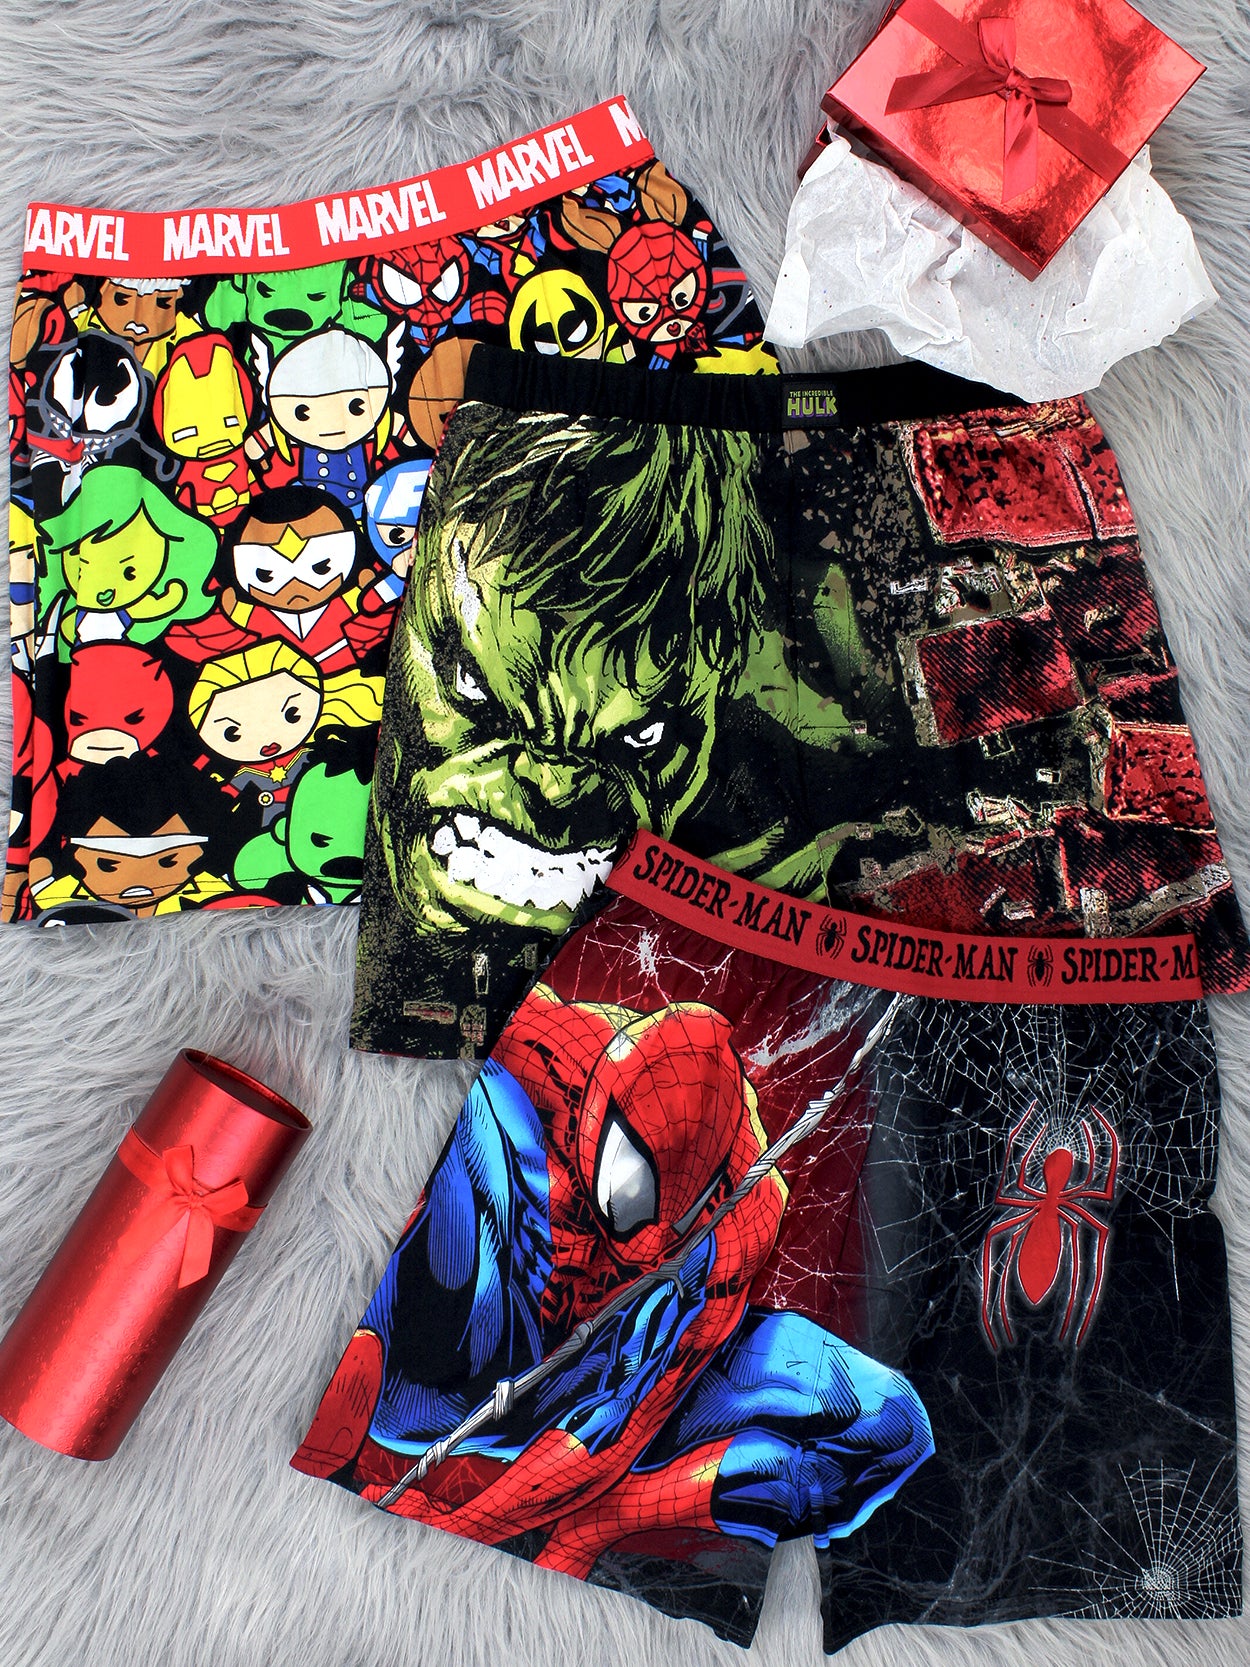 Marvel, Accessories, Spiderman Boys Cotton Underwear Size 4